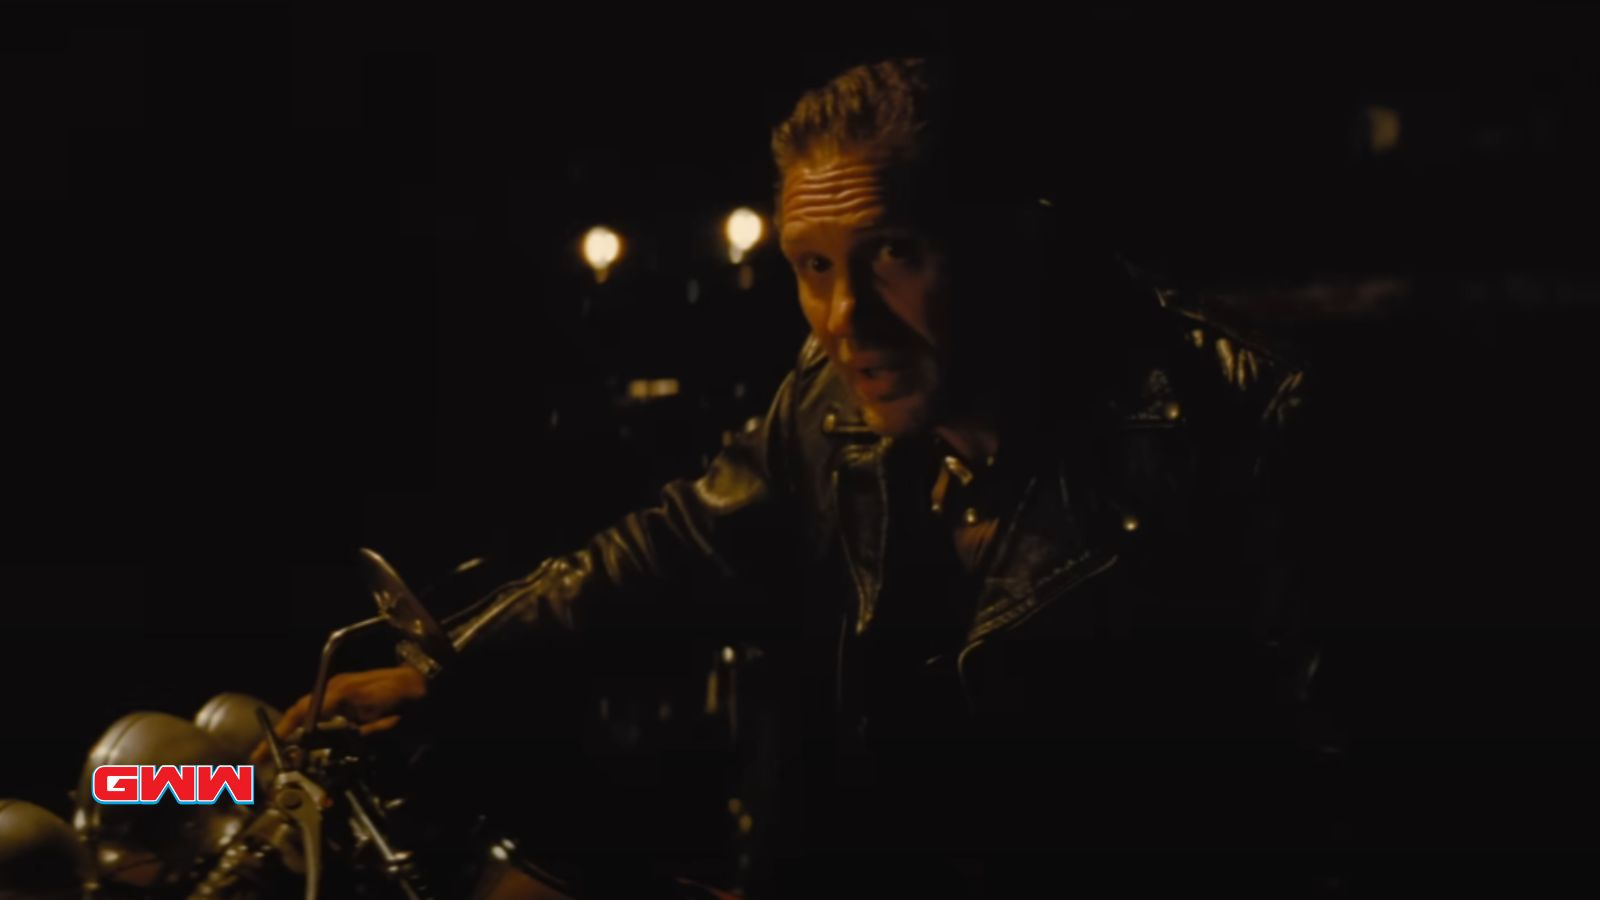 Johnny en una motocicleta por la noche, con una chaqueta de cuero, hablando.